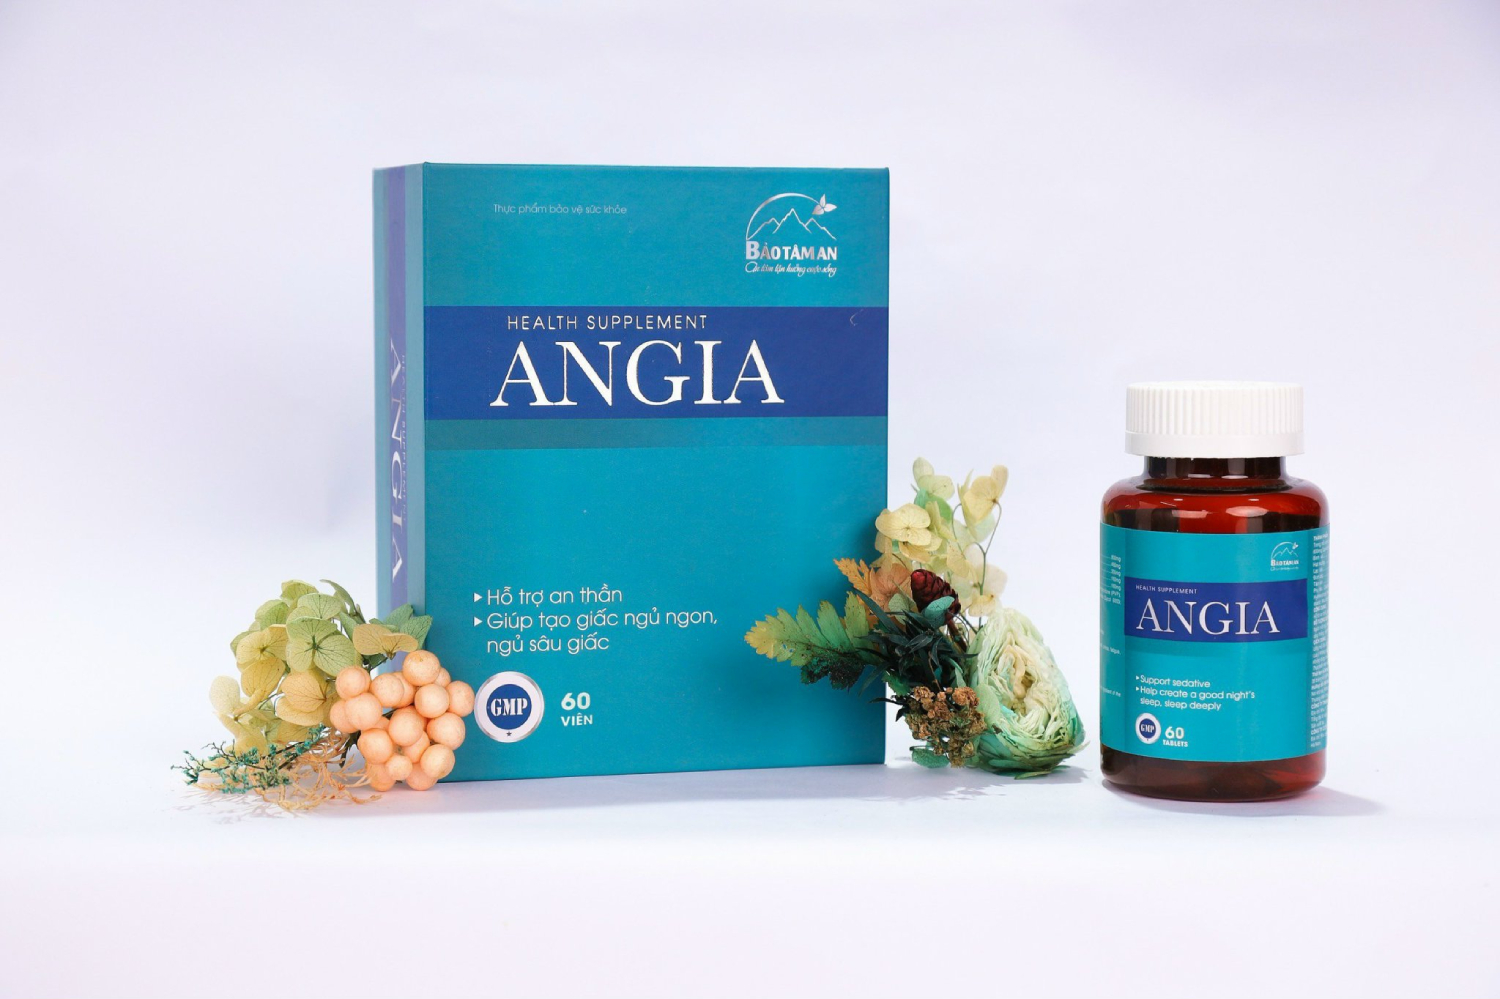 Angia Bảo tâm an giúp an thần, hỗ trợ mất ngủ đau đầu, giúp hạ nhiệt và hạ huyết áp, bổ tim mạch